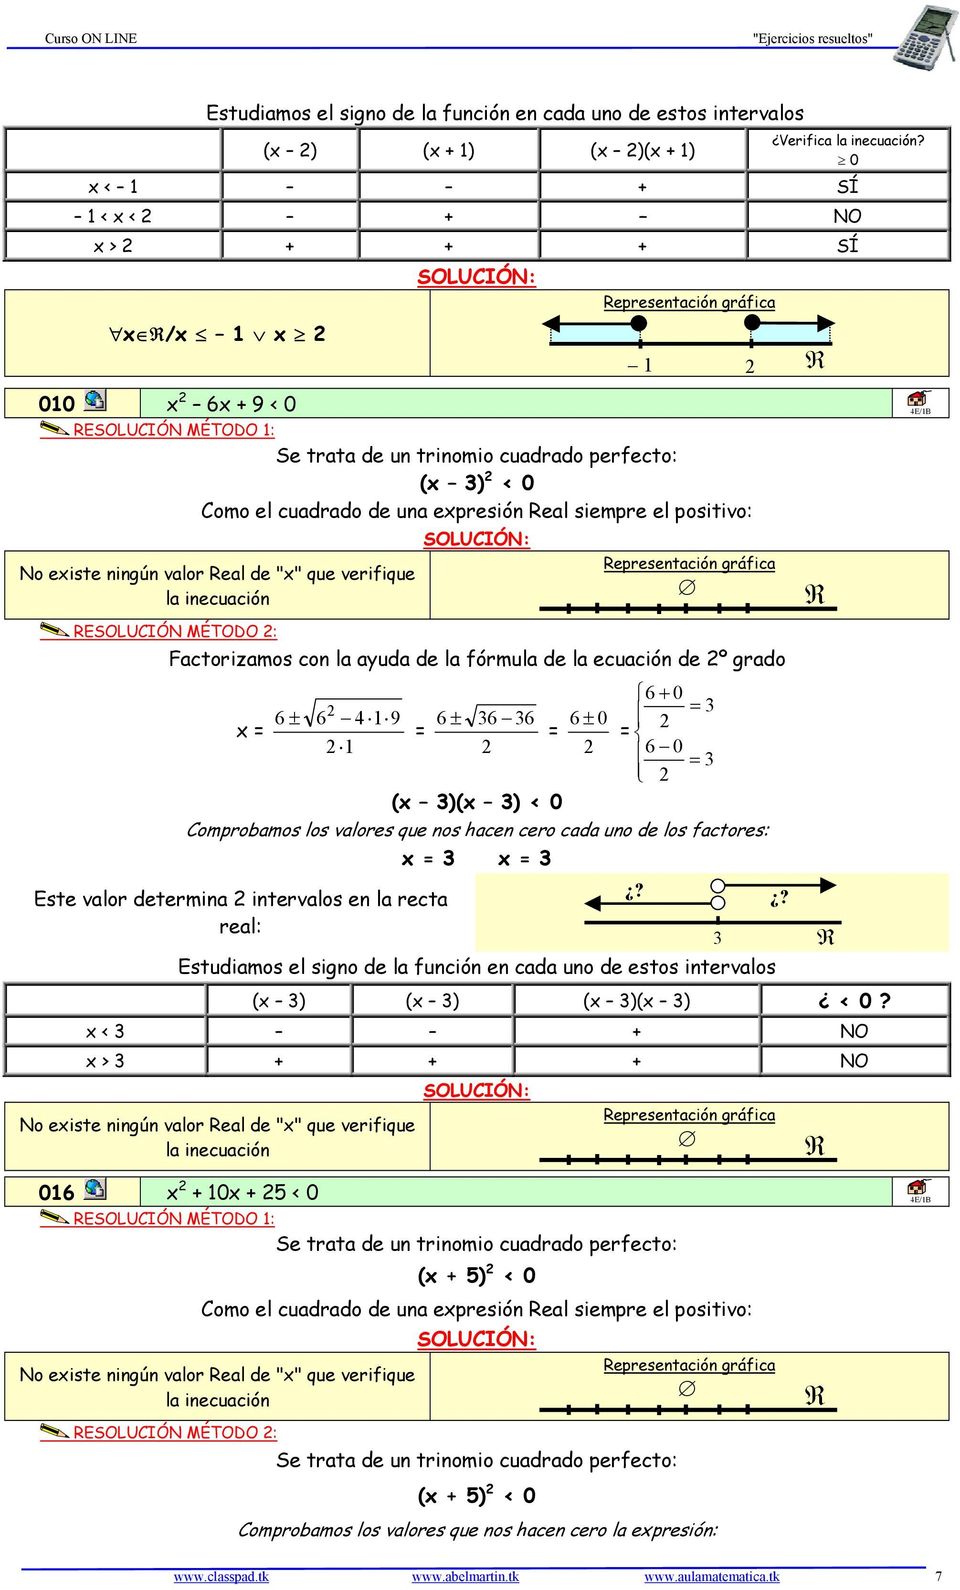 siempre el positivo: No existe ningún valor eal de "x" que verifique la inecuación ESOLUCIÓN MÉTODO : epresentación gráfica Factorizamos con la ayuda de la fórmula de la ecuación de º grado x 6 ± 6 4